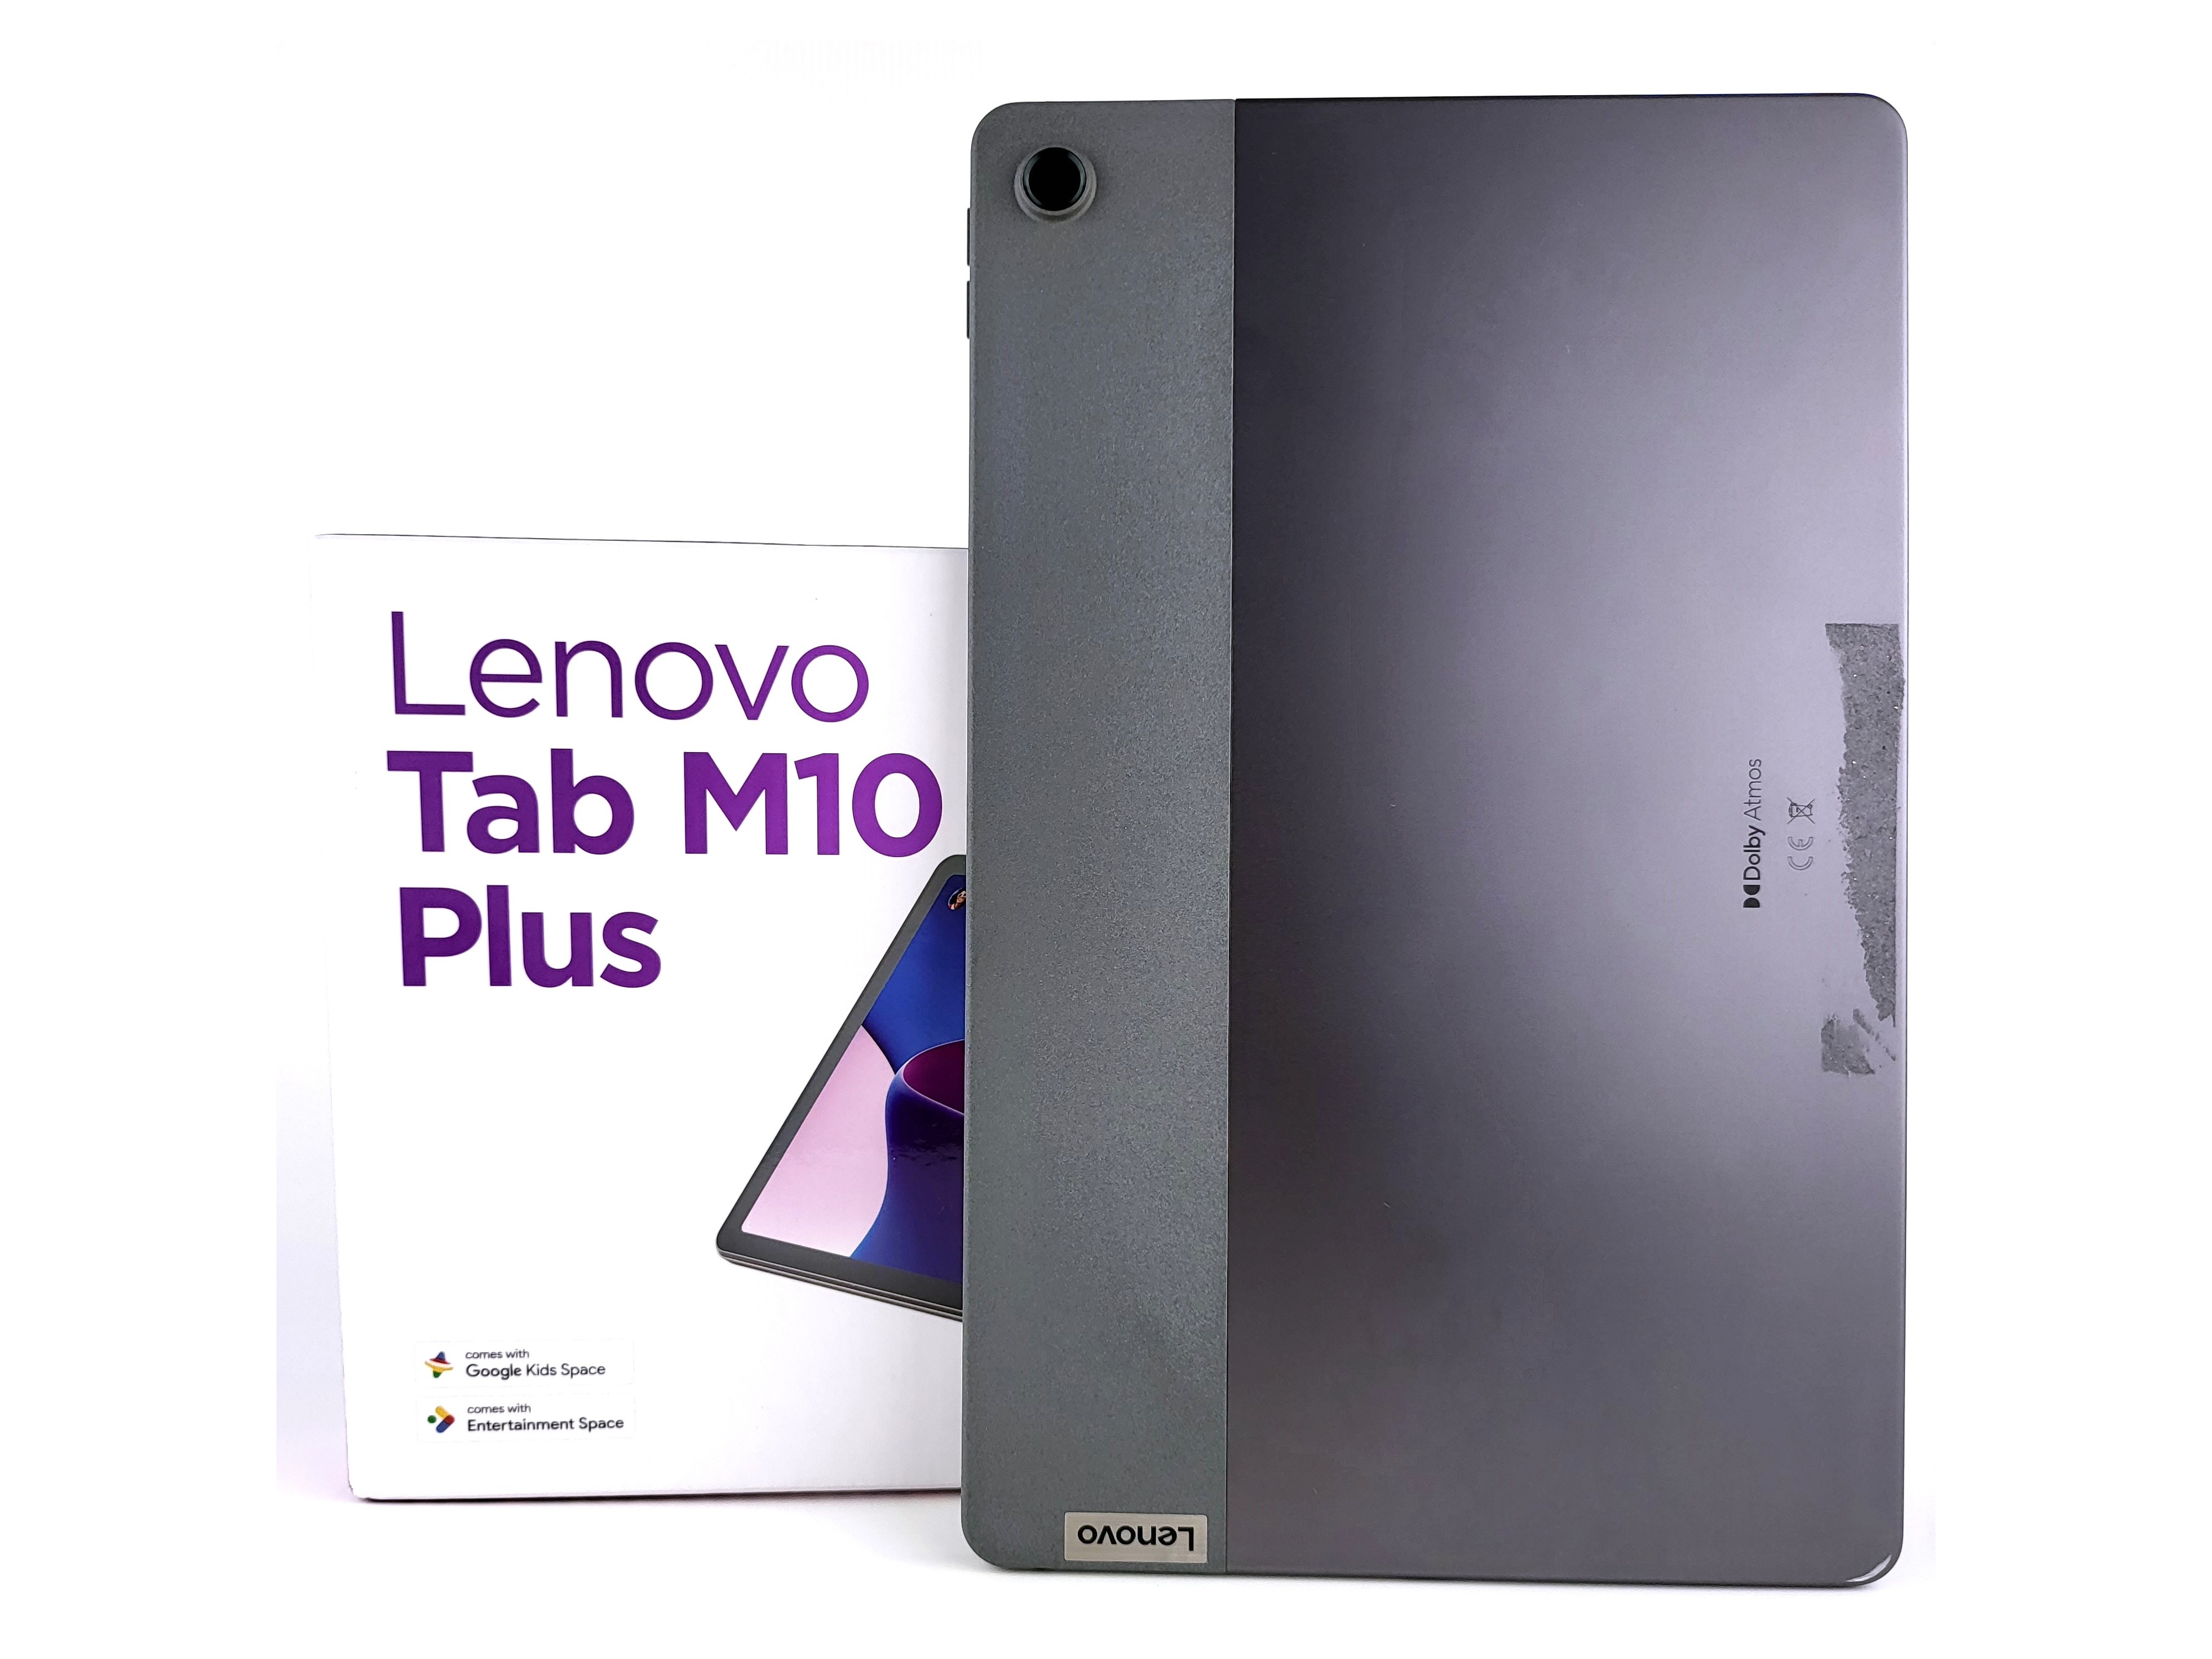 Lenovo Tab M10 Plus Gen 3 review verdict: Multimedia is the main